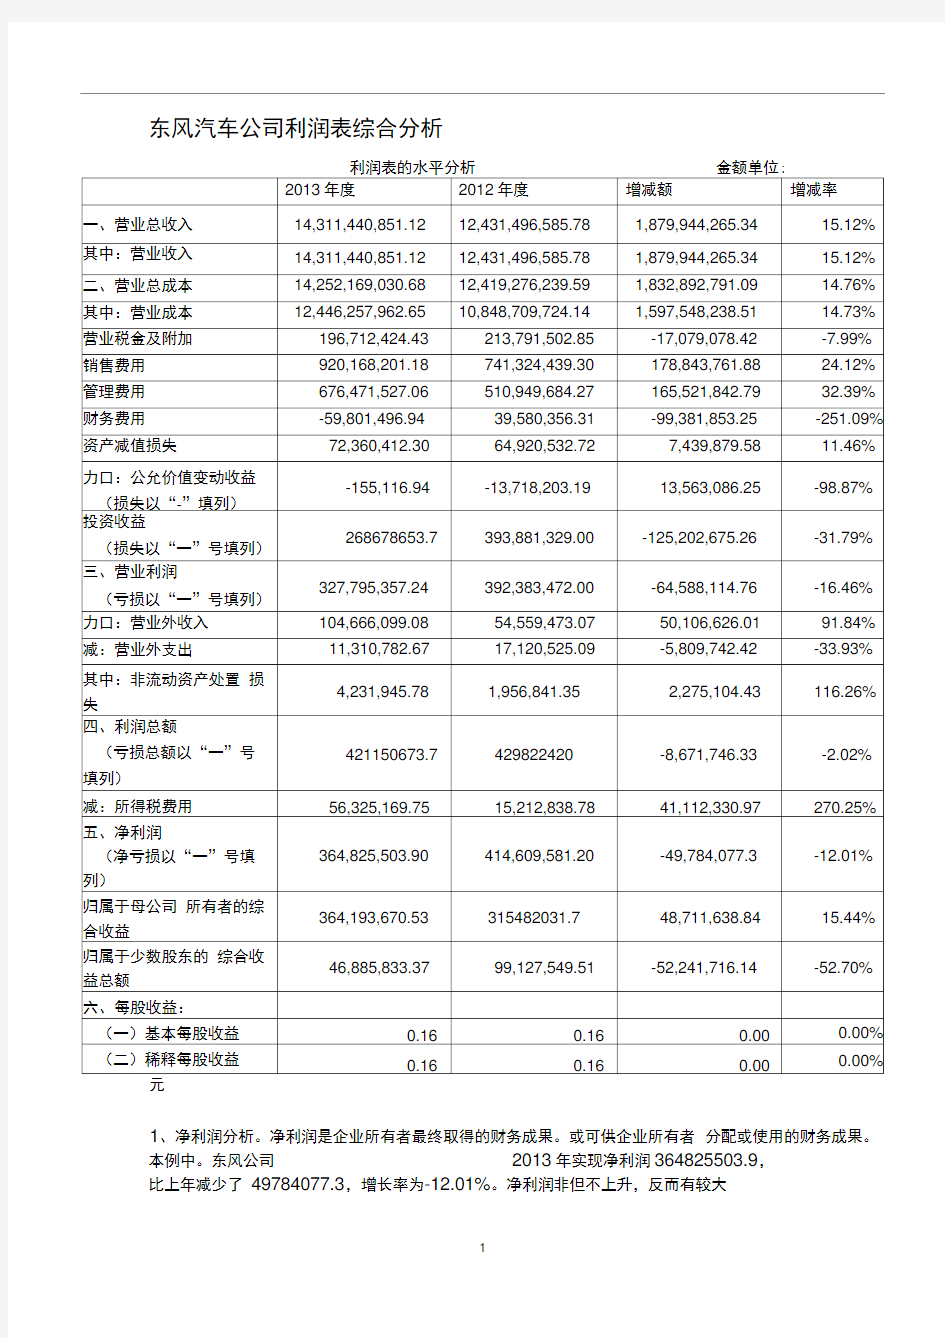 东风汽车公司利润表综合分析